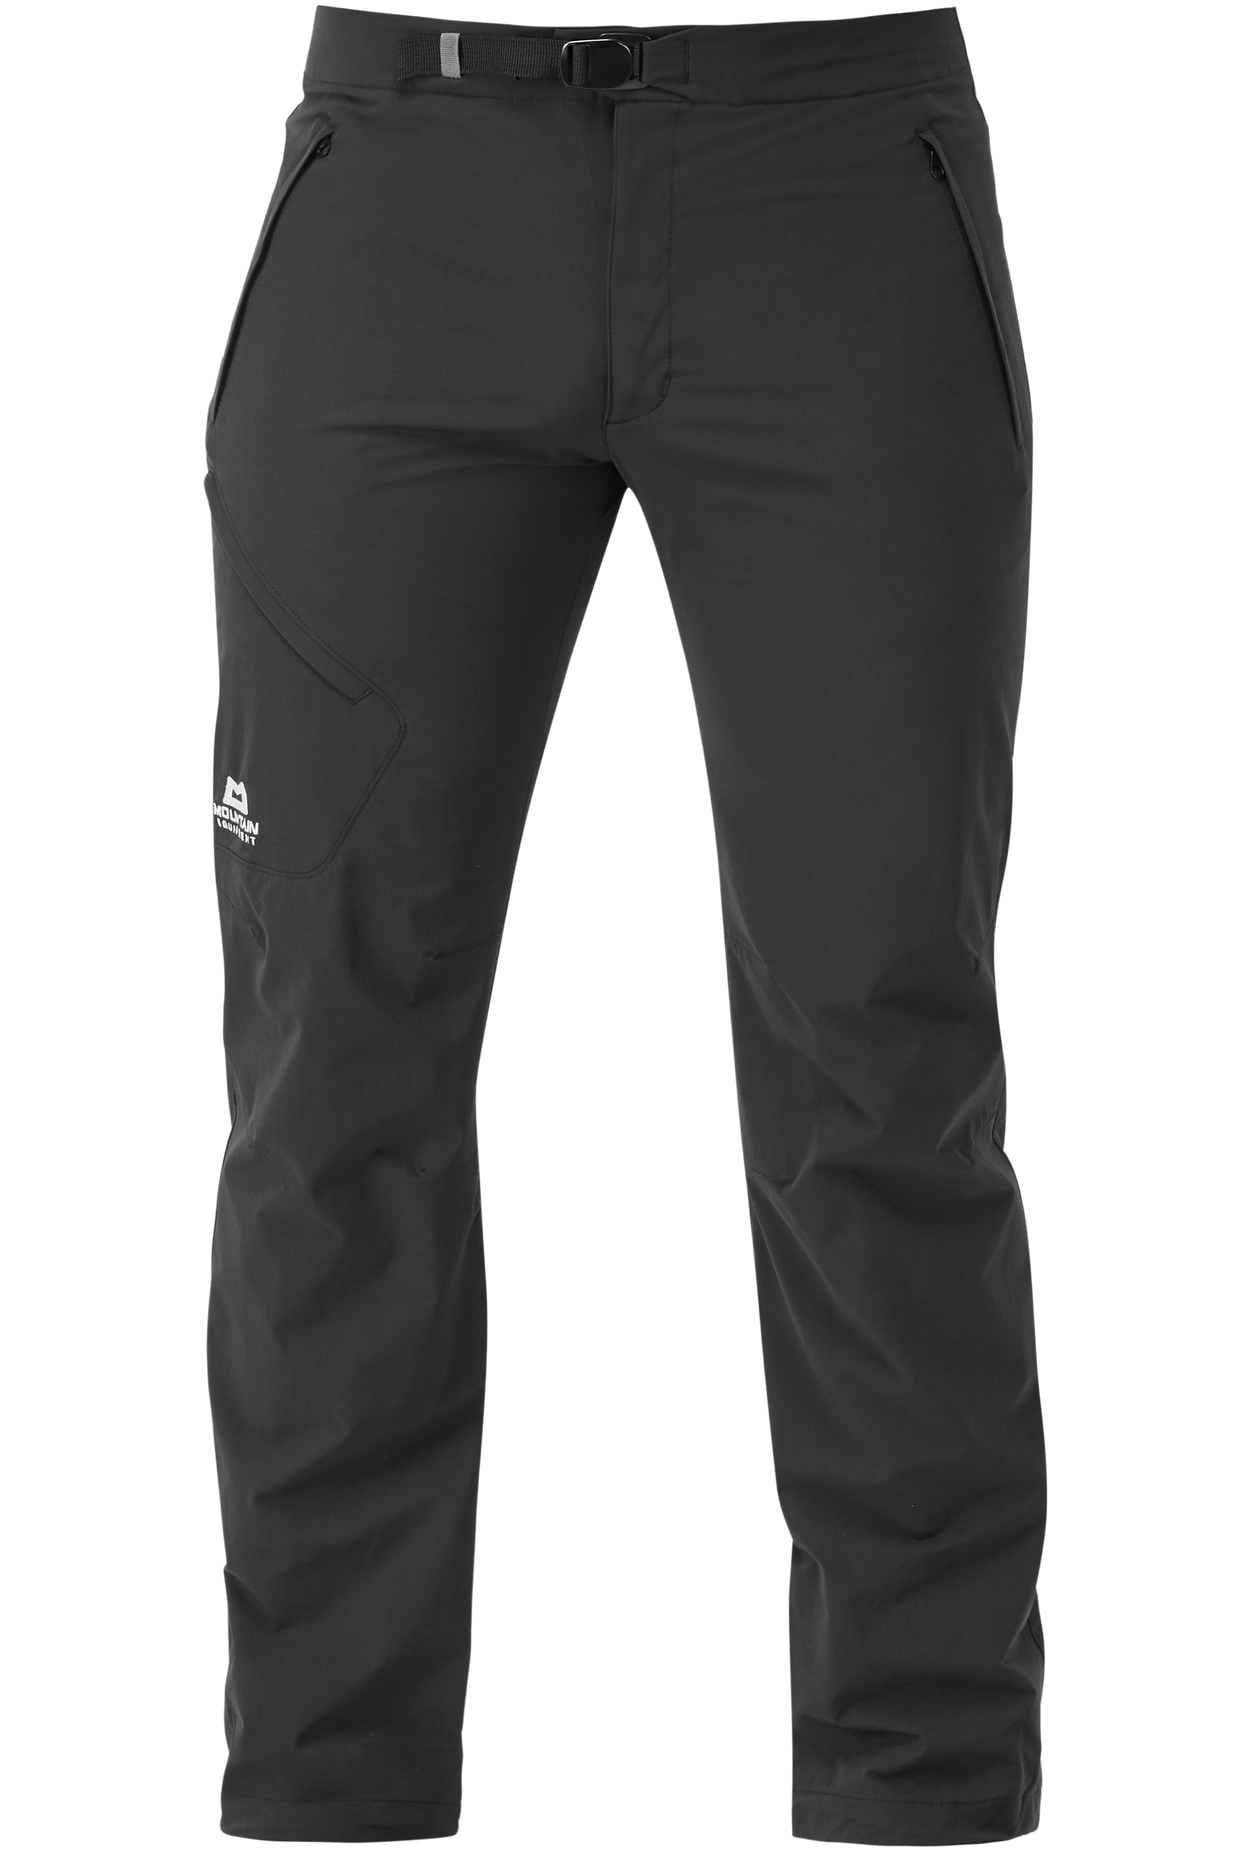 Mountain Equipment pánské softshellové kalhoty Comici Pant - zkrácené Barva: black/black, Velikost: 30/S